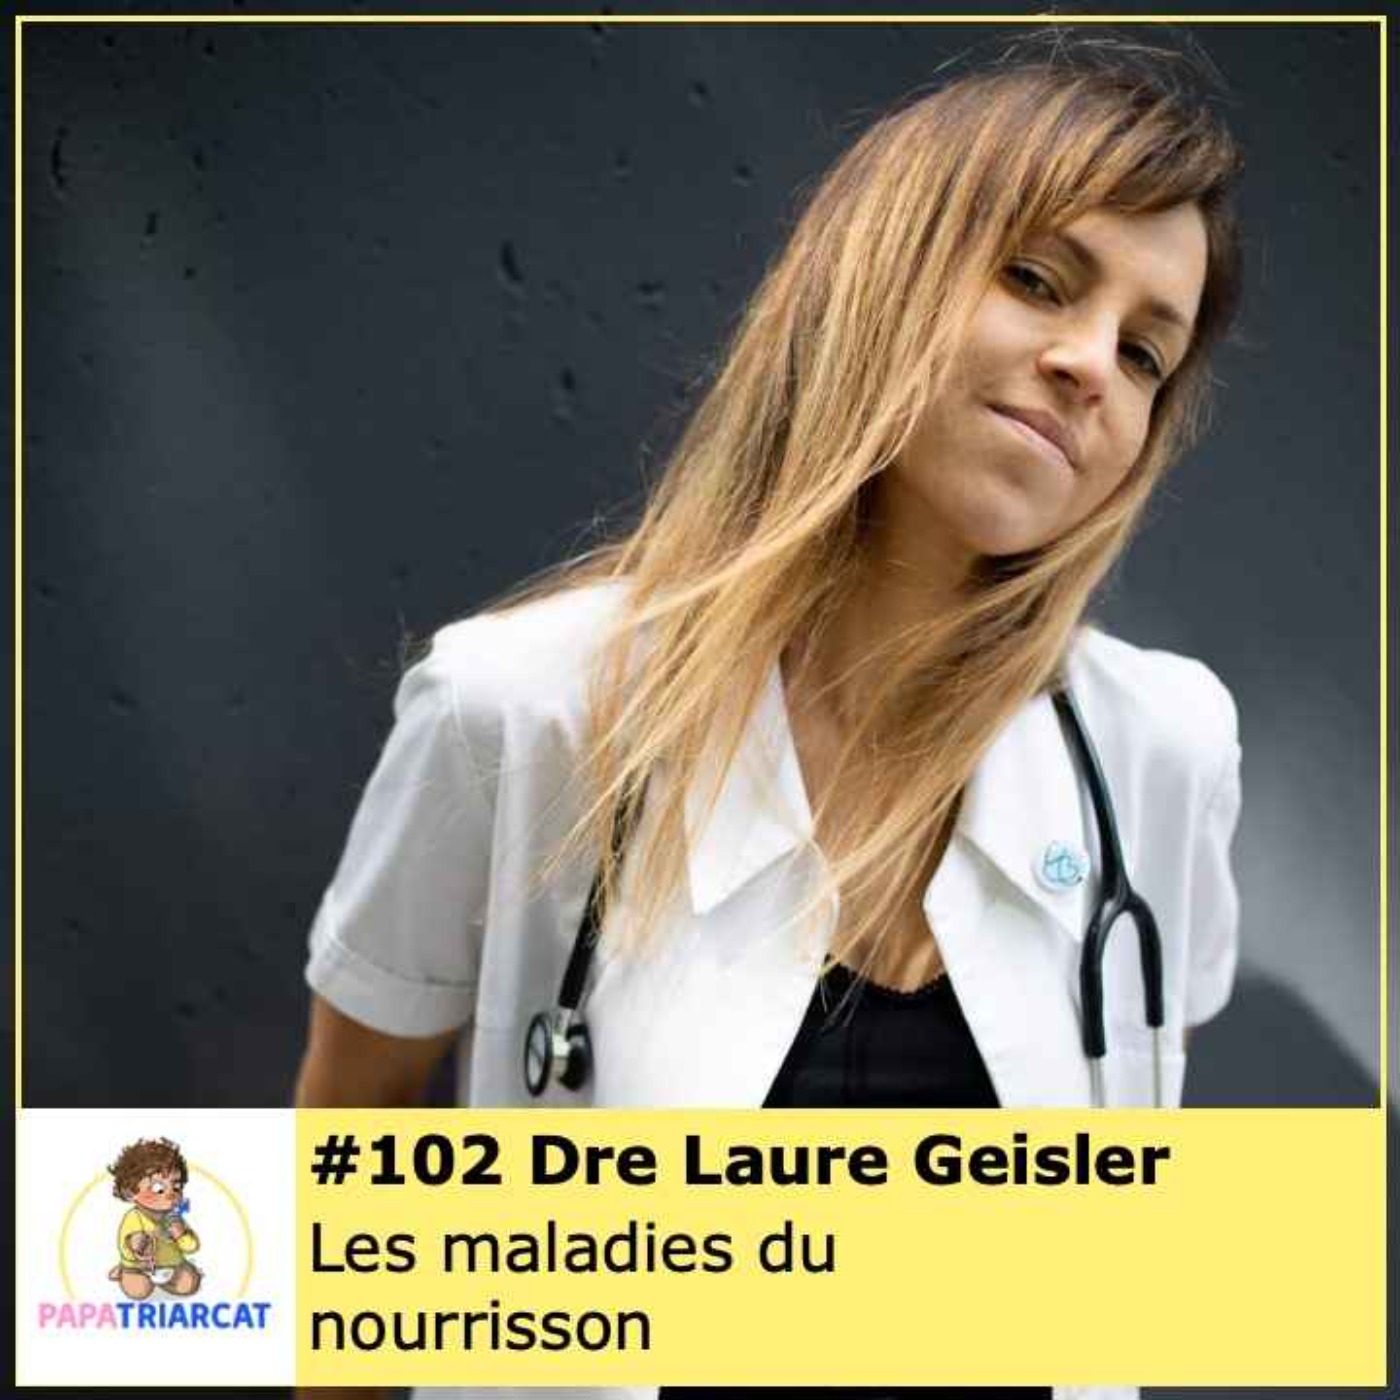 #102 - Les maladies du nourrisson - Dre Laure Geisler